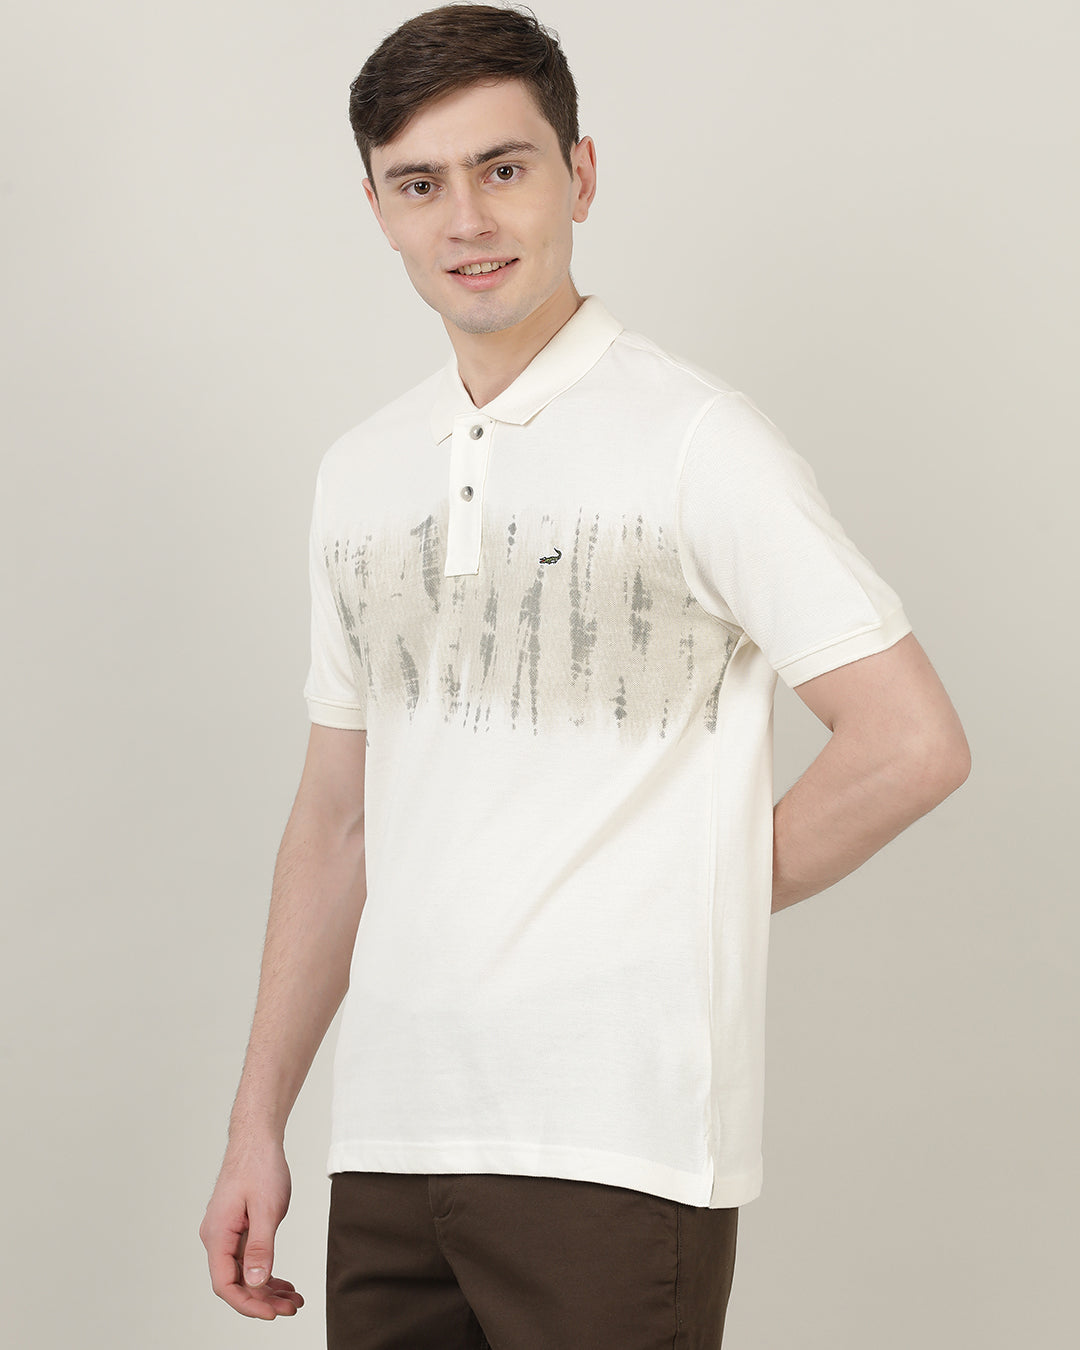 Crocodile Men Printed Casual T-Shirt